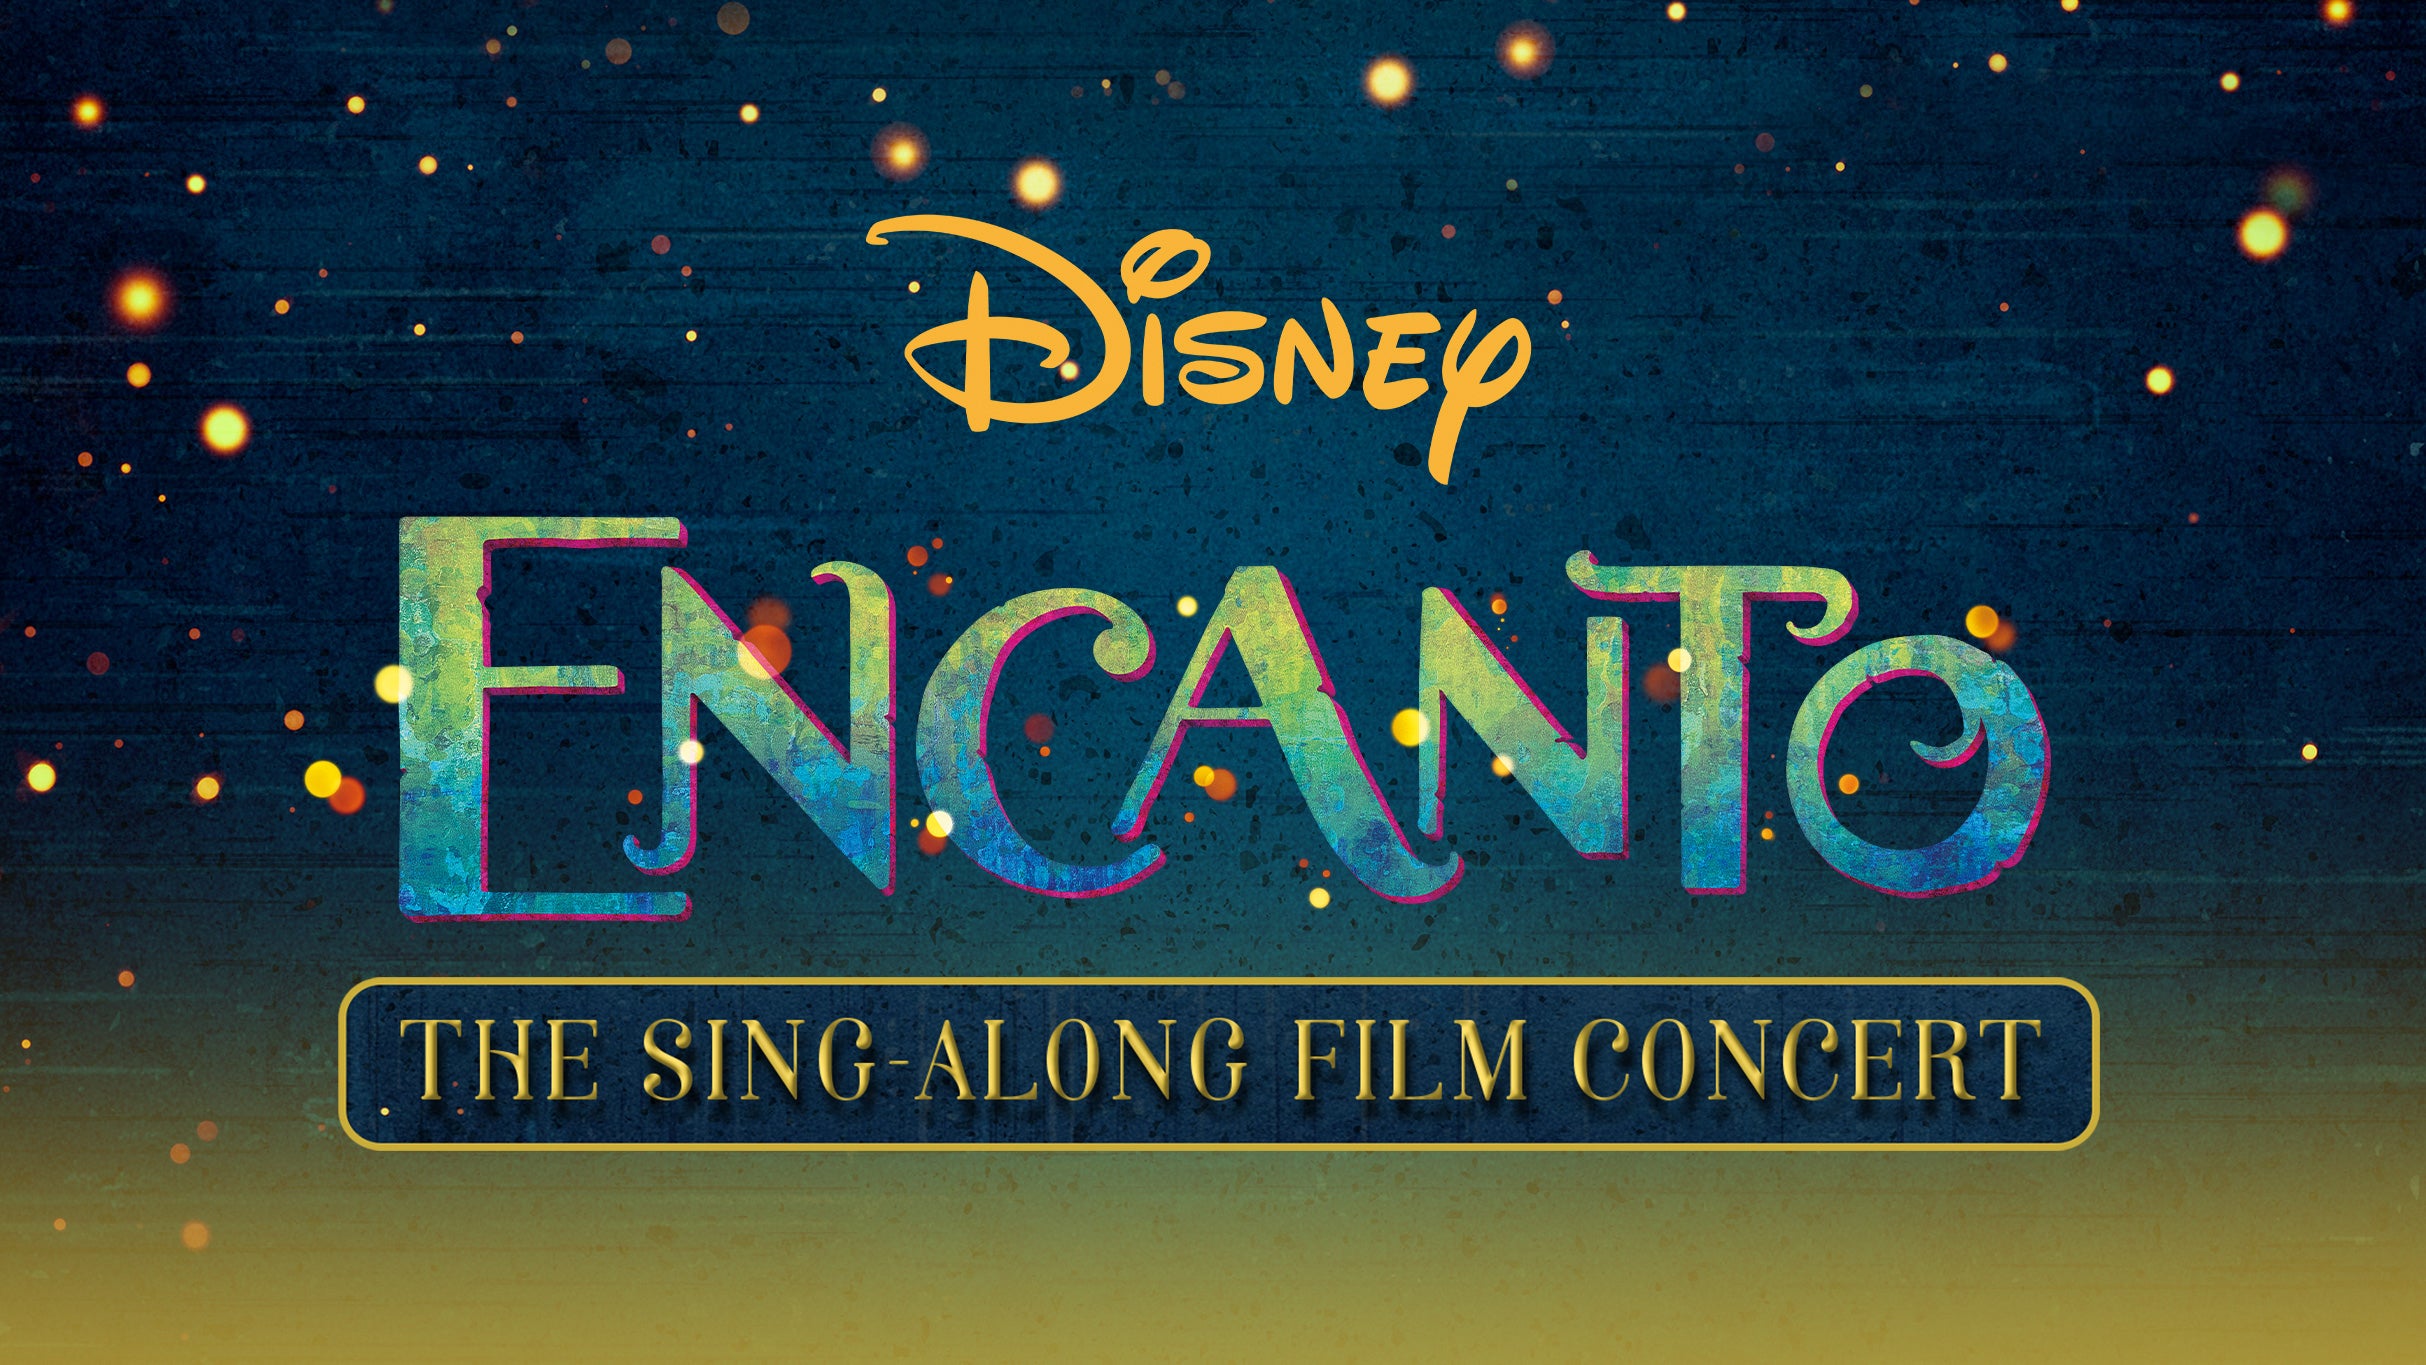 Disney Encanto Sing-Along